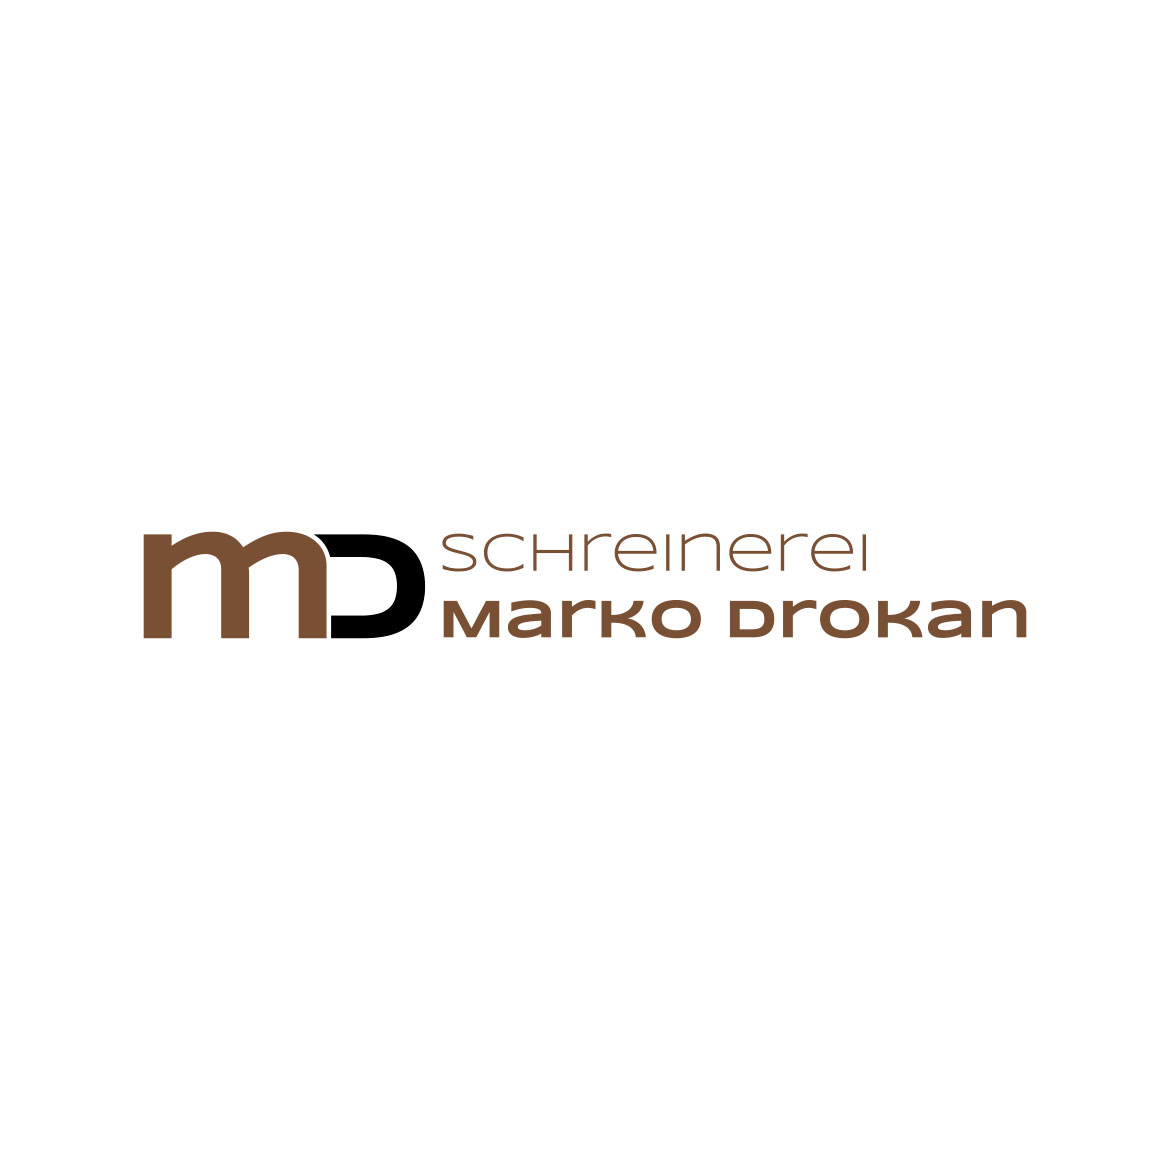 Logo Schreinerei Marko Drokan